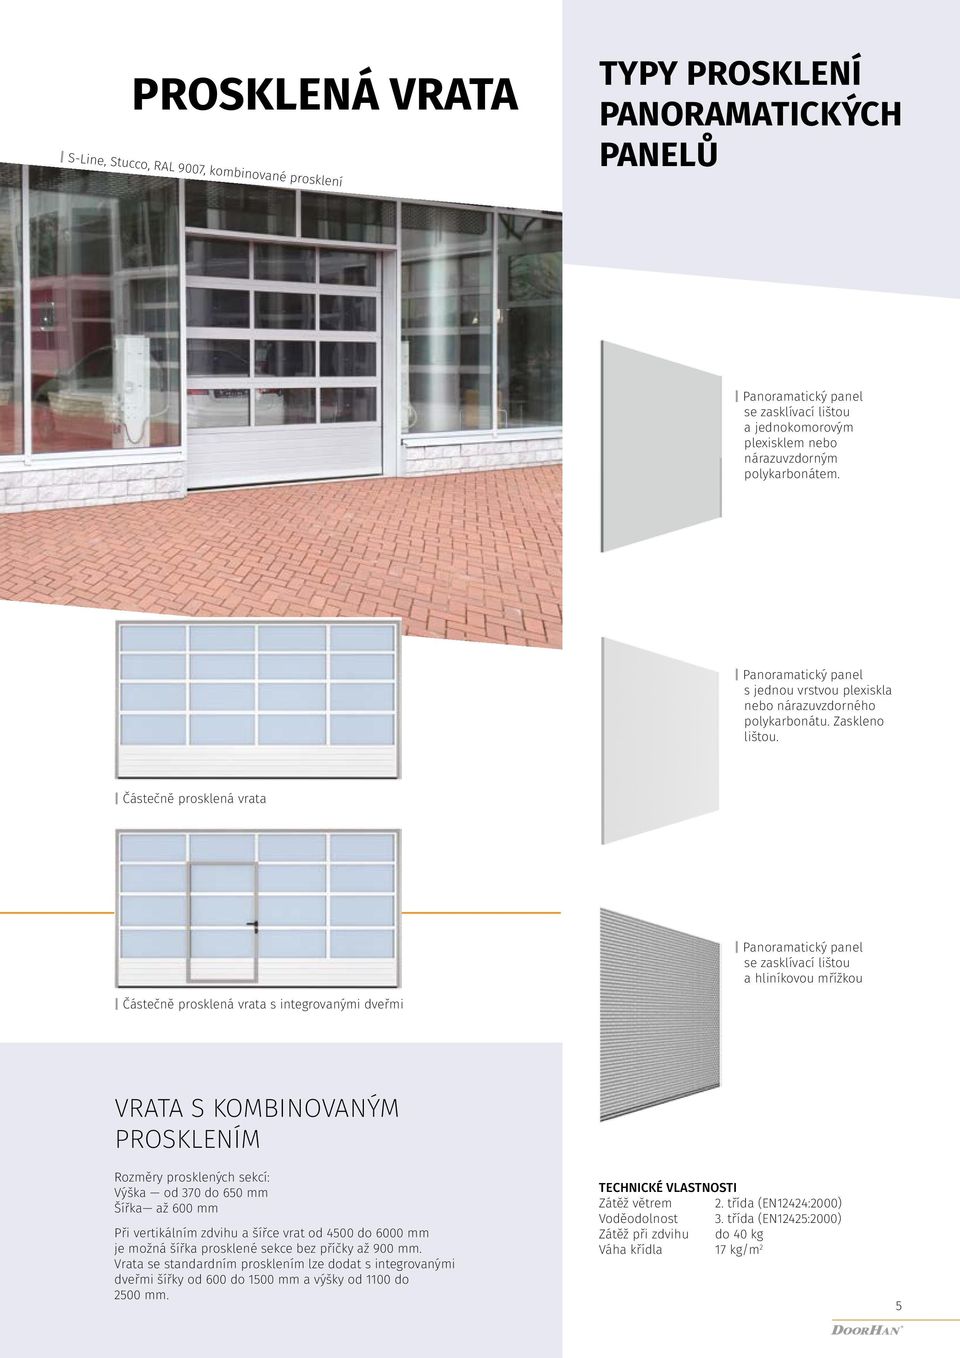 Částečně prosklená vrata Panoramatický panel se zasklívací lištou a liníkovou mřížkou Částečně prosklená vrata s integrovanými dveřmi VRATA KOMBINOVANÝM PROKLENÍM Rozměry prosklenýc sekcí: Výška od